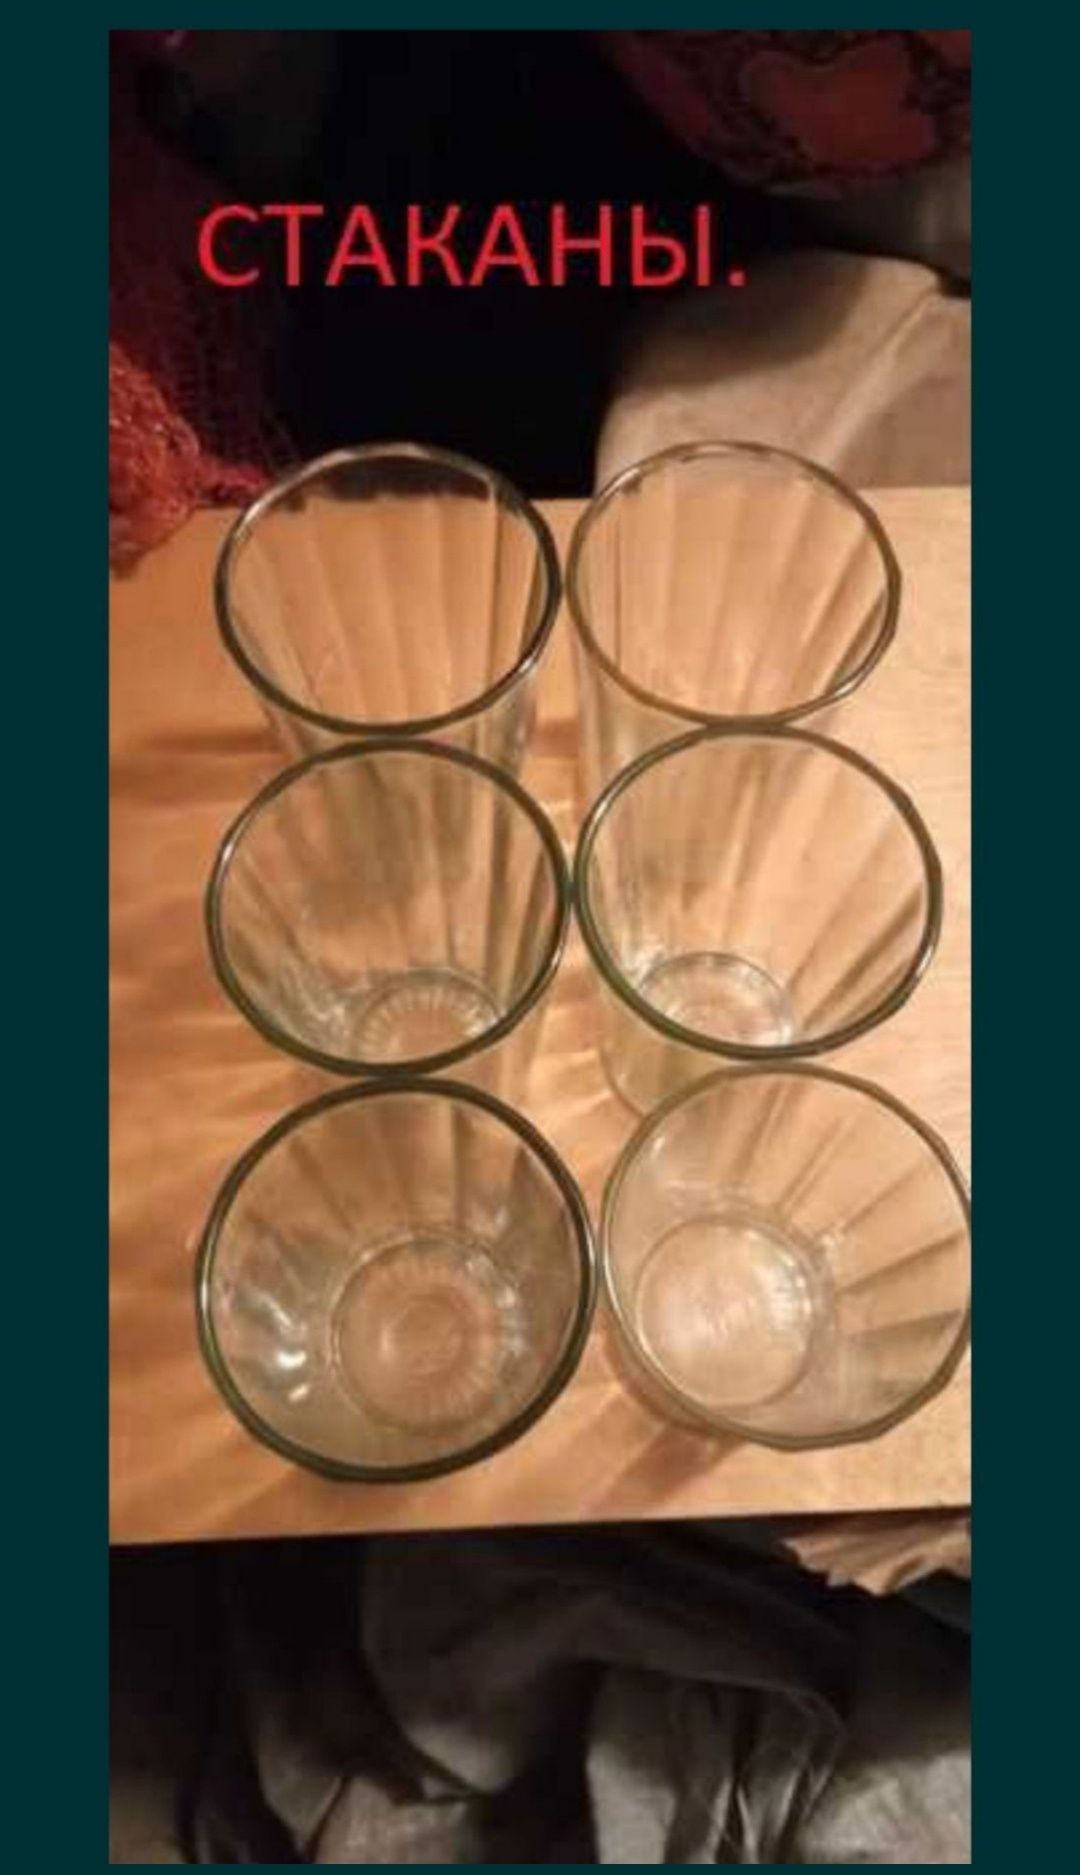 Гранённые стаканы в хорошем состоянии без трещин и сколов.